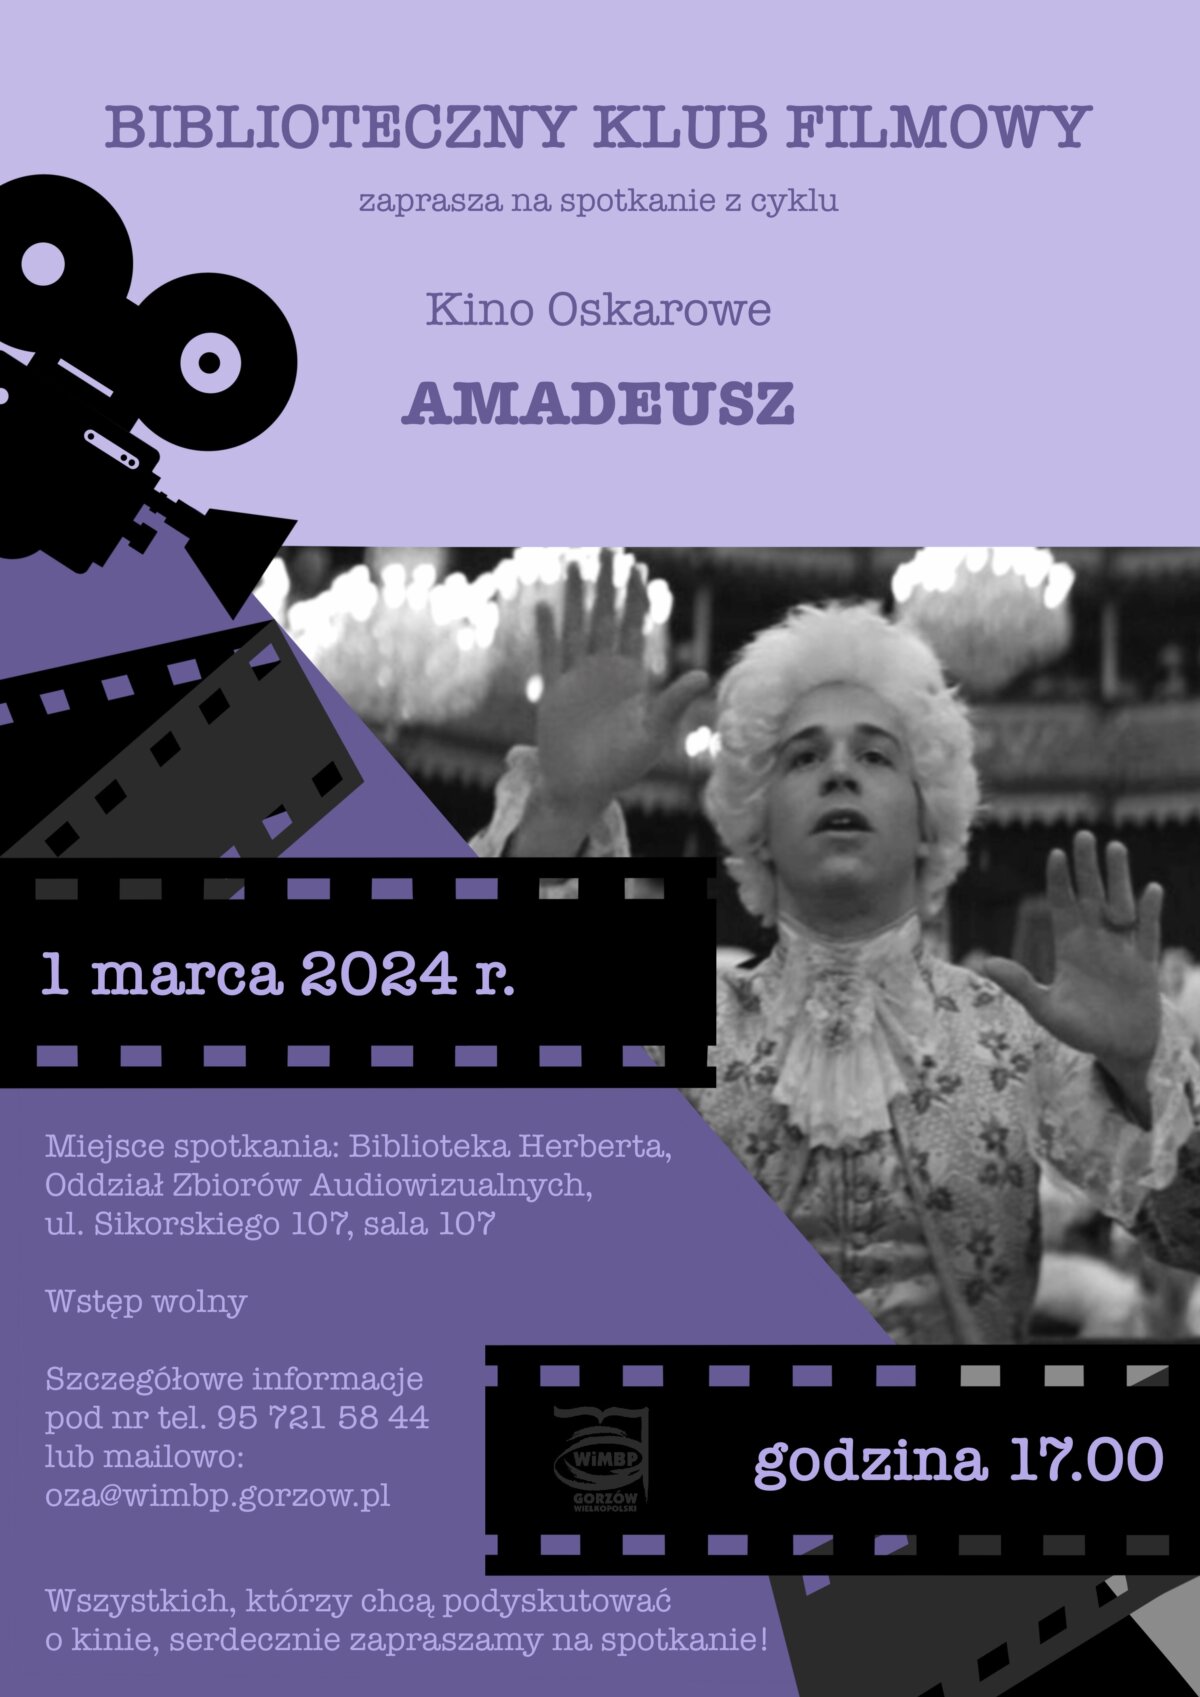 Plakat promujący wydarzenie z kadrem z filmu, w kolorze czarno-fioletowym